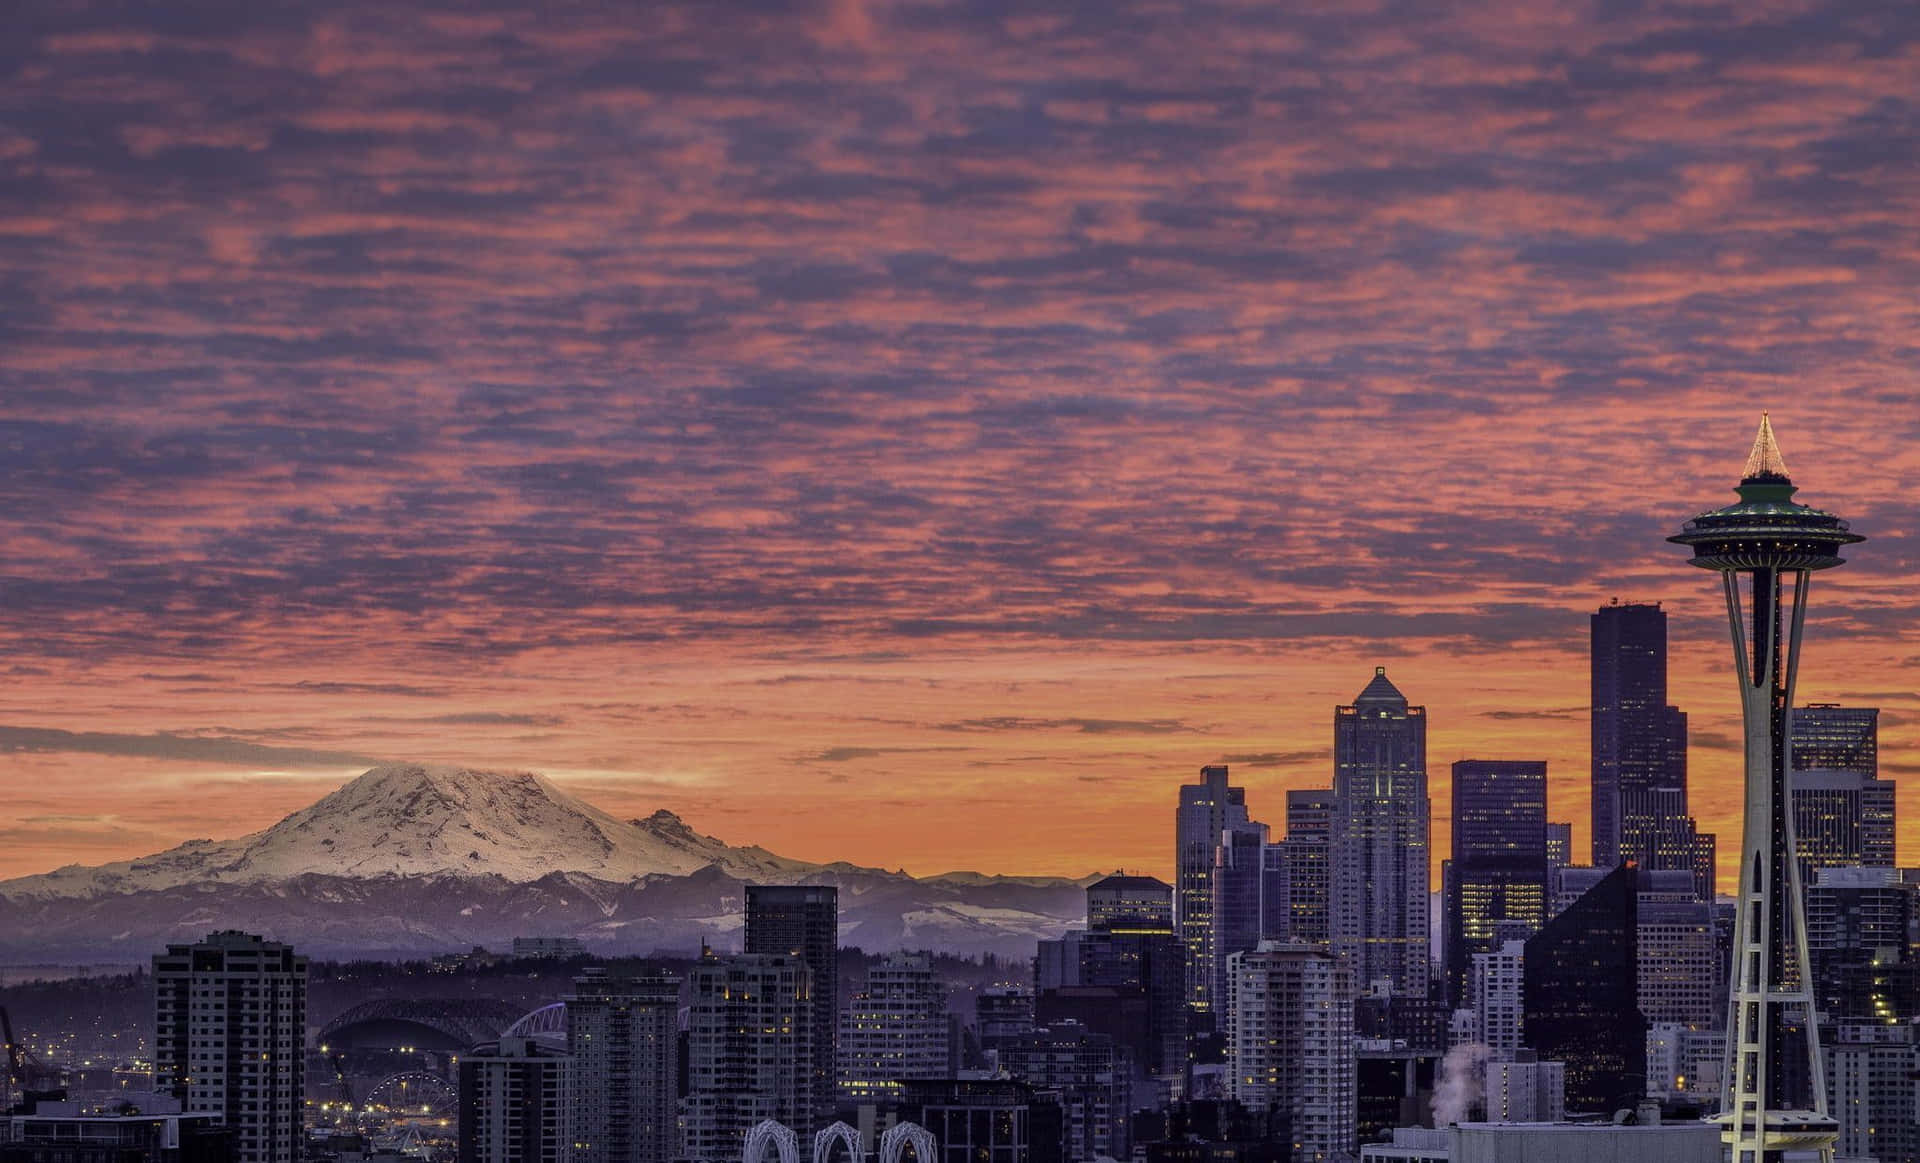 Tramontosulle Nuvole Sopra Il Monte Rainier: Il Migliore Sfondo Di Seattle.